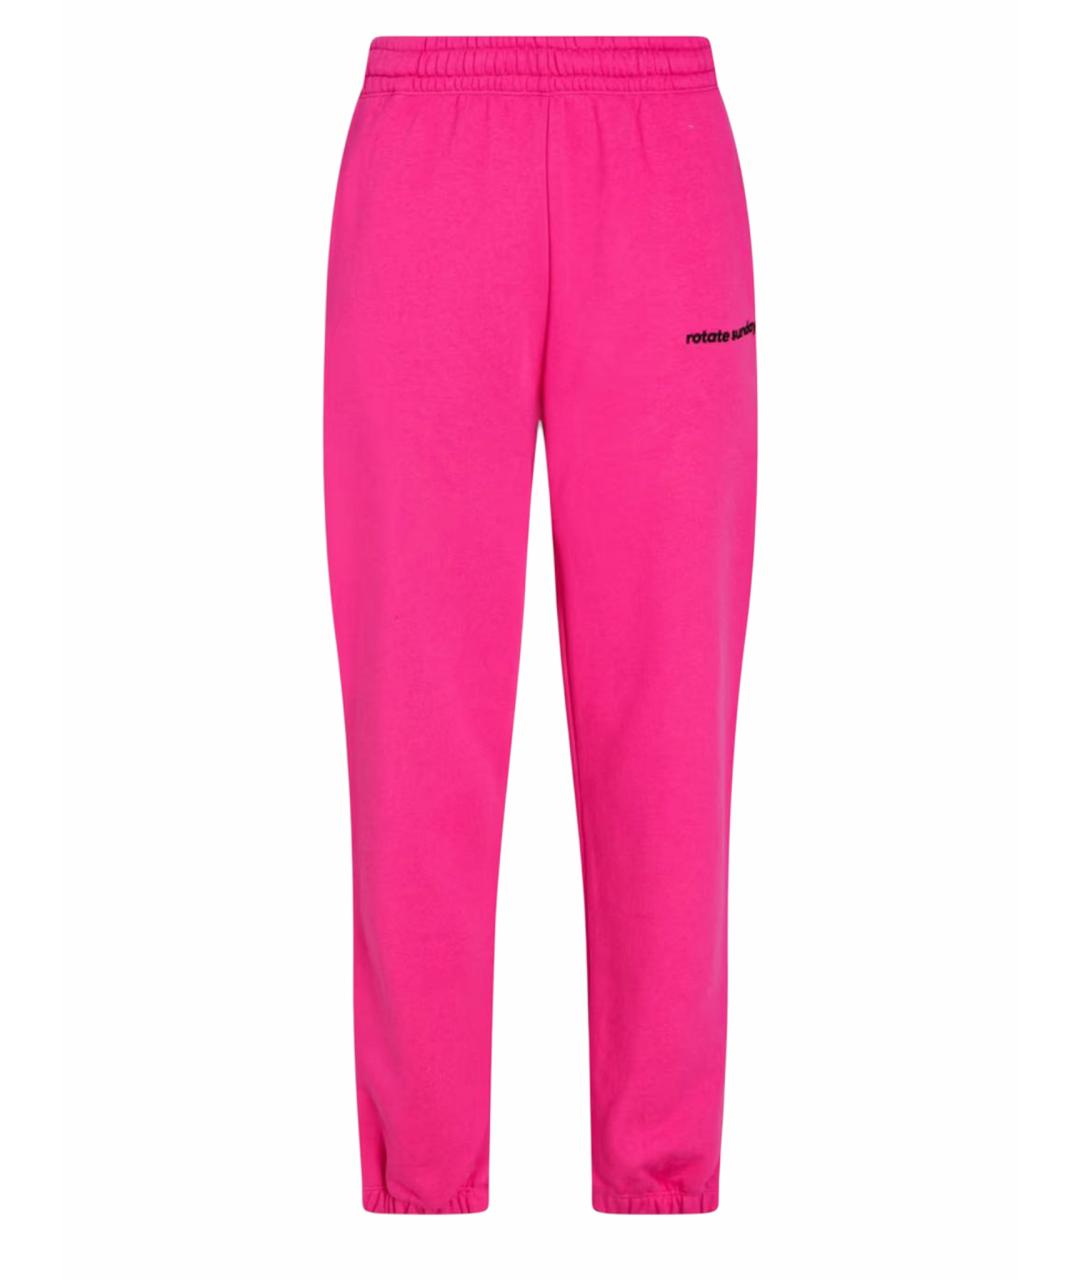 ROTATE Розовые хлопковые спортивные брюки и шорты, фото 1